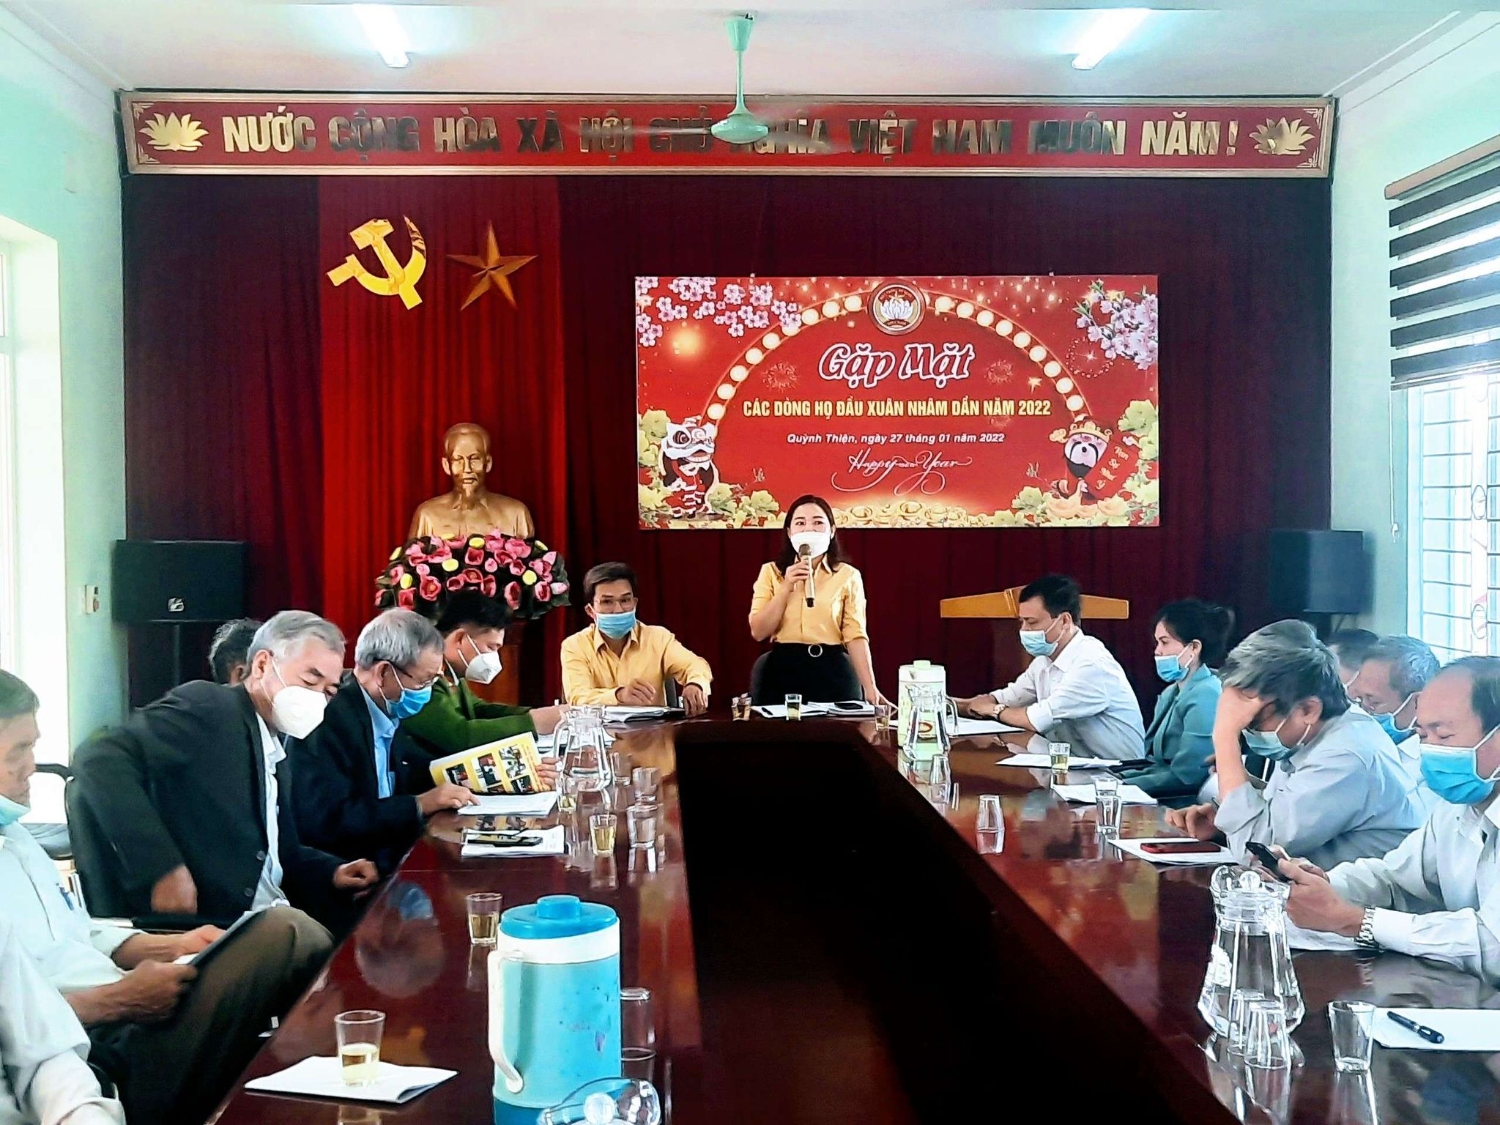 MTTQ phường Quỳnh Thiện tổ chức gặp mặt các dòng họ đầu xuân Nhâm Dần 2022